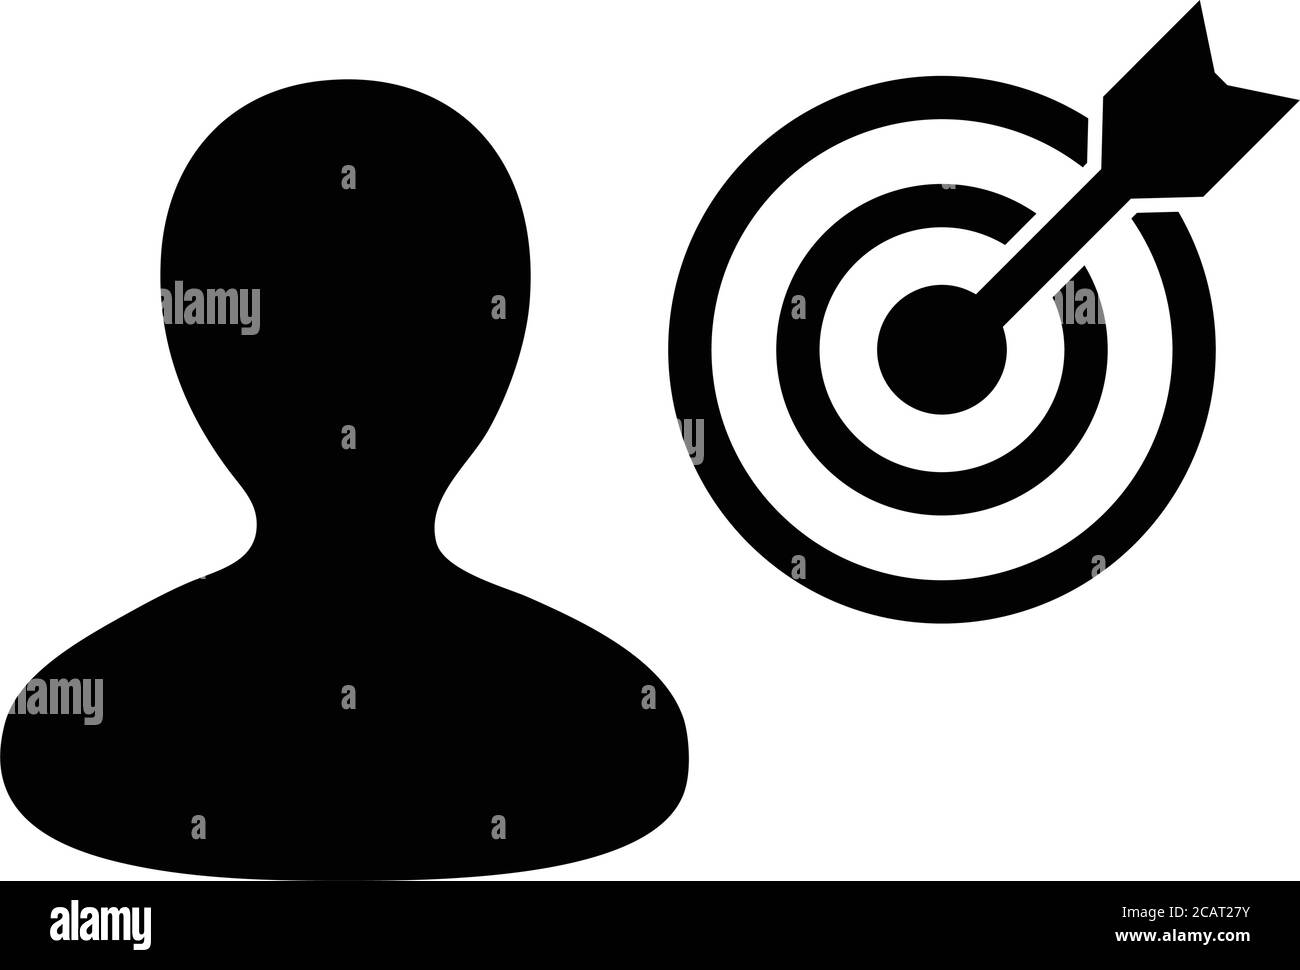 Dartboard Icon Vektor Bullseye Ziel mit männlichen Benutzerprofil Avatar Symbol für Business Development Ziele in Glyphe Piktogramm Illustration Stock Vektor